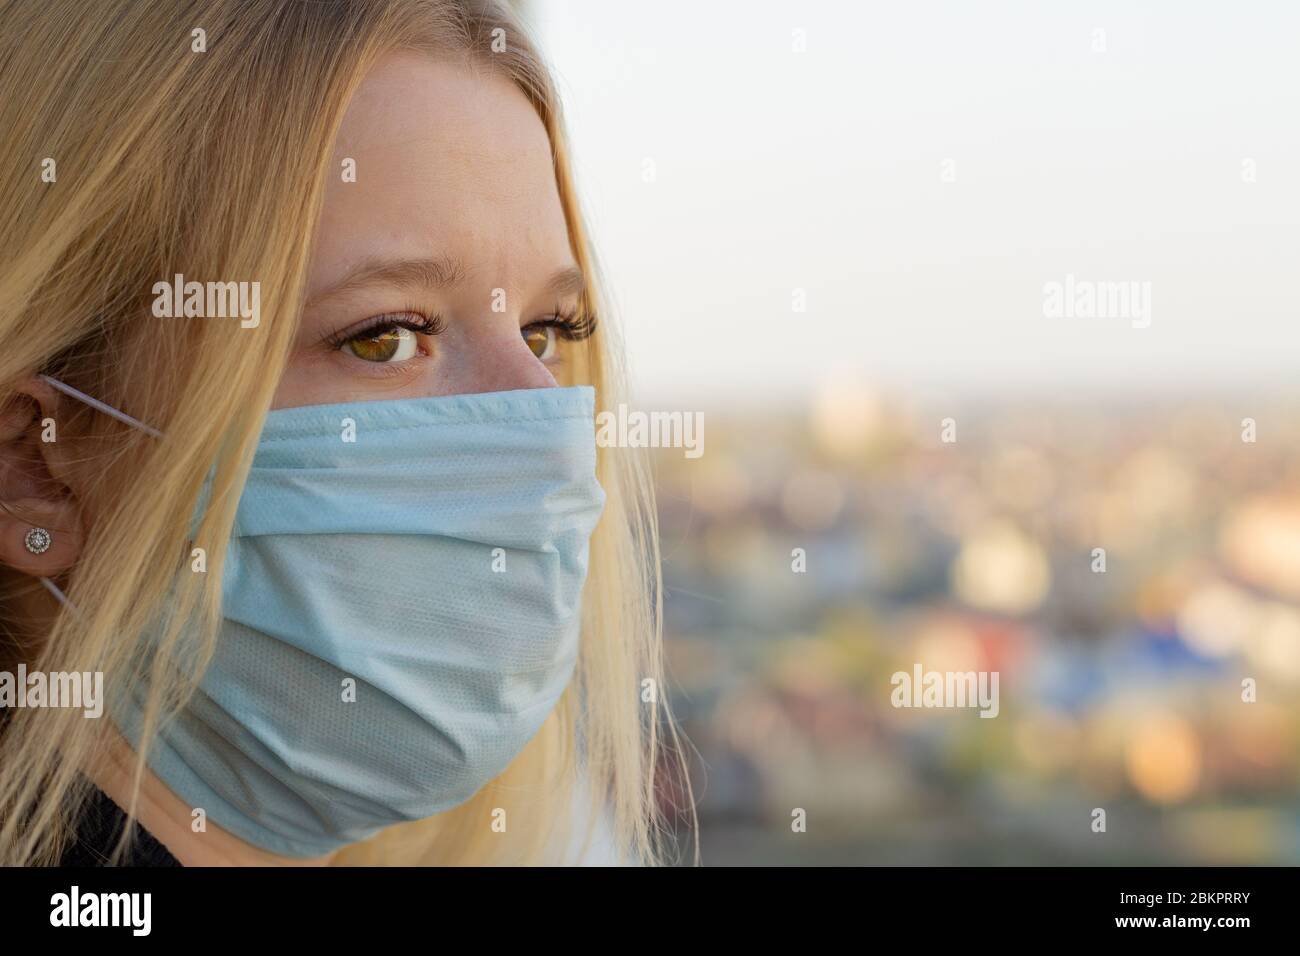 Portrait de jeune femme avec masque médical, fond de ville flou. Concept covid-19 prévention pandémie mondiale de coronavirus Banque D'Images